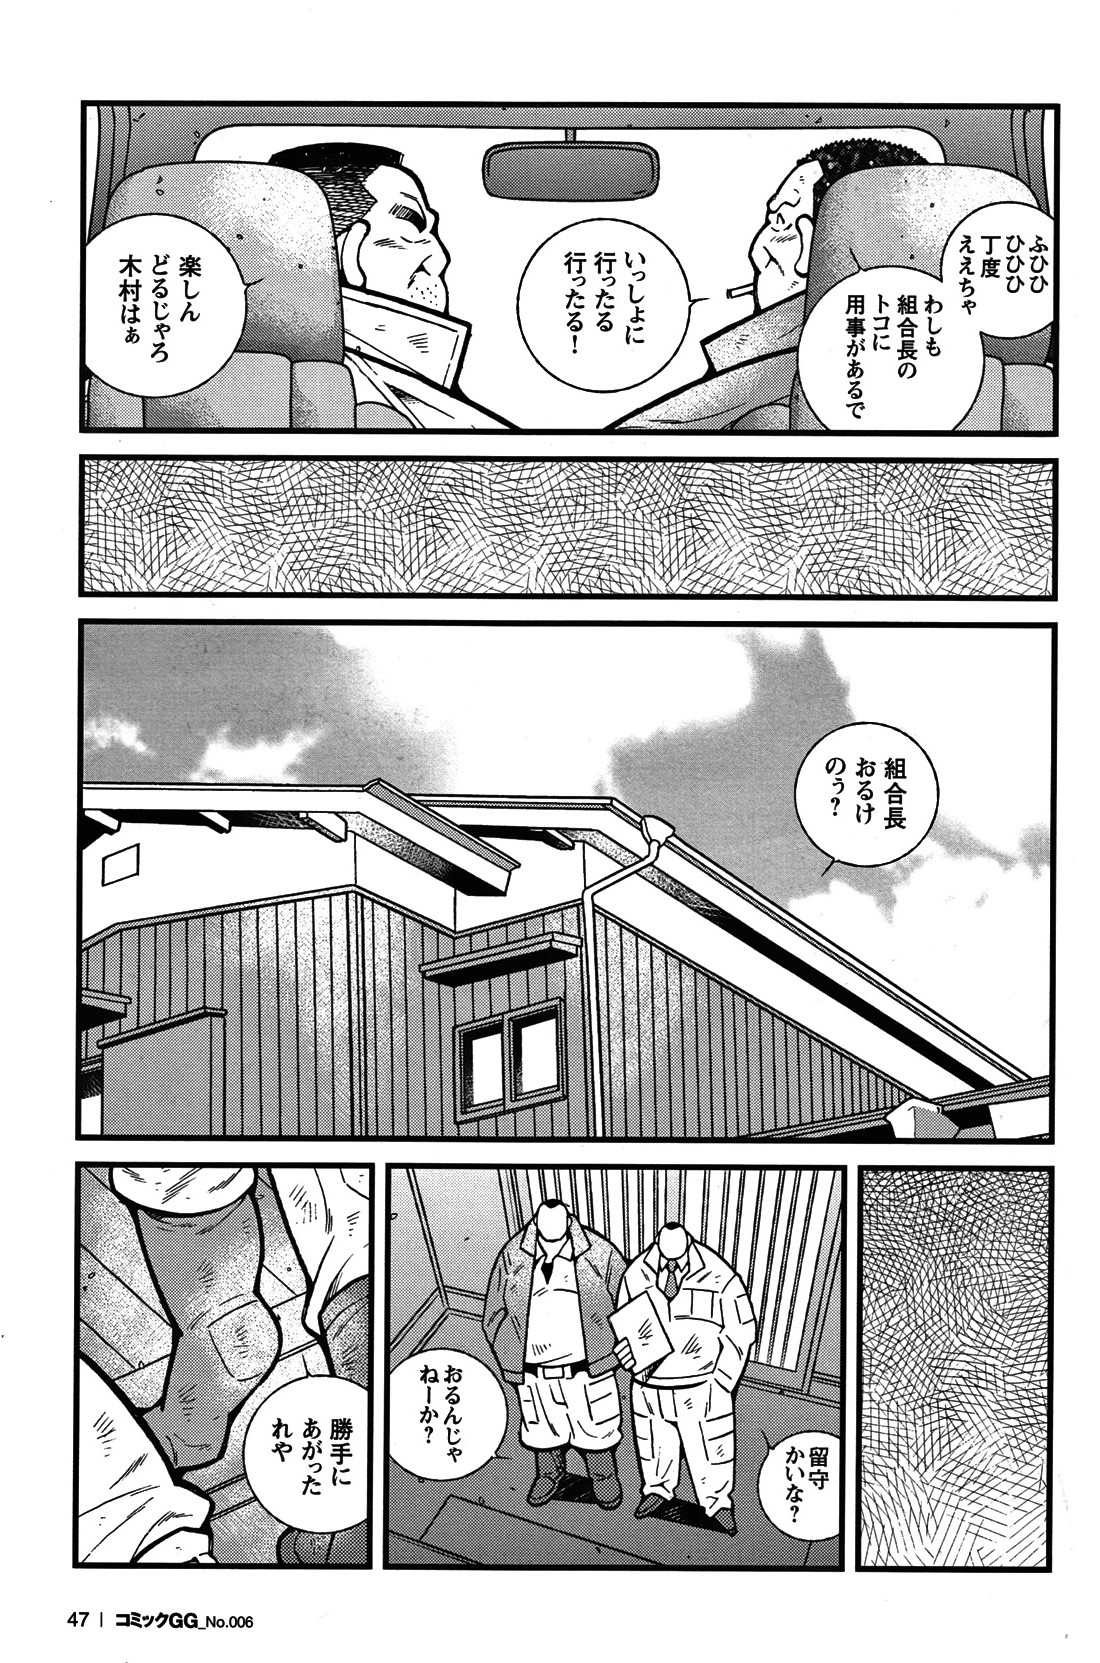 Comic G-men Gaho No. 06 Nikutai Roudousha page 42 full